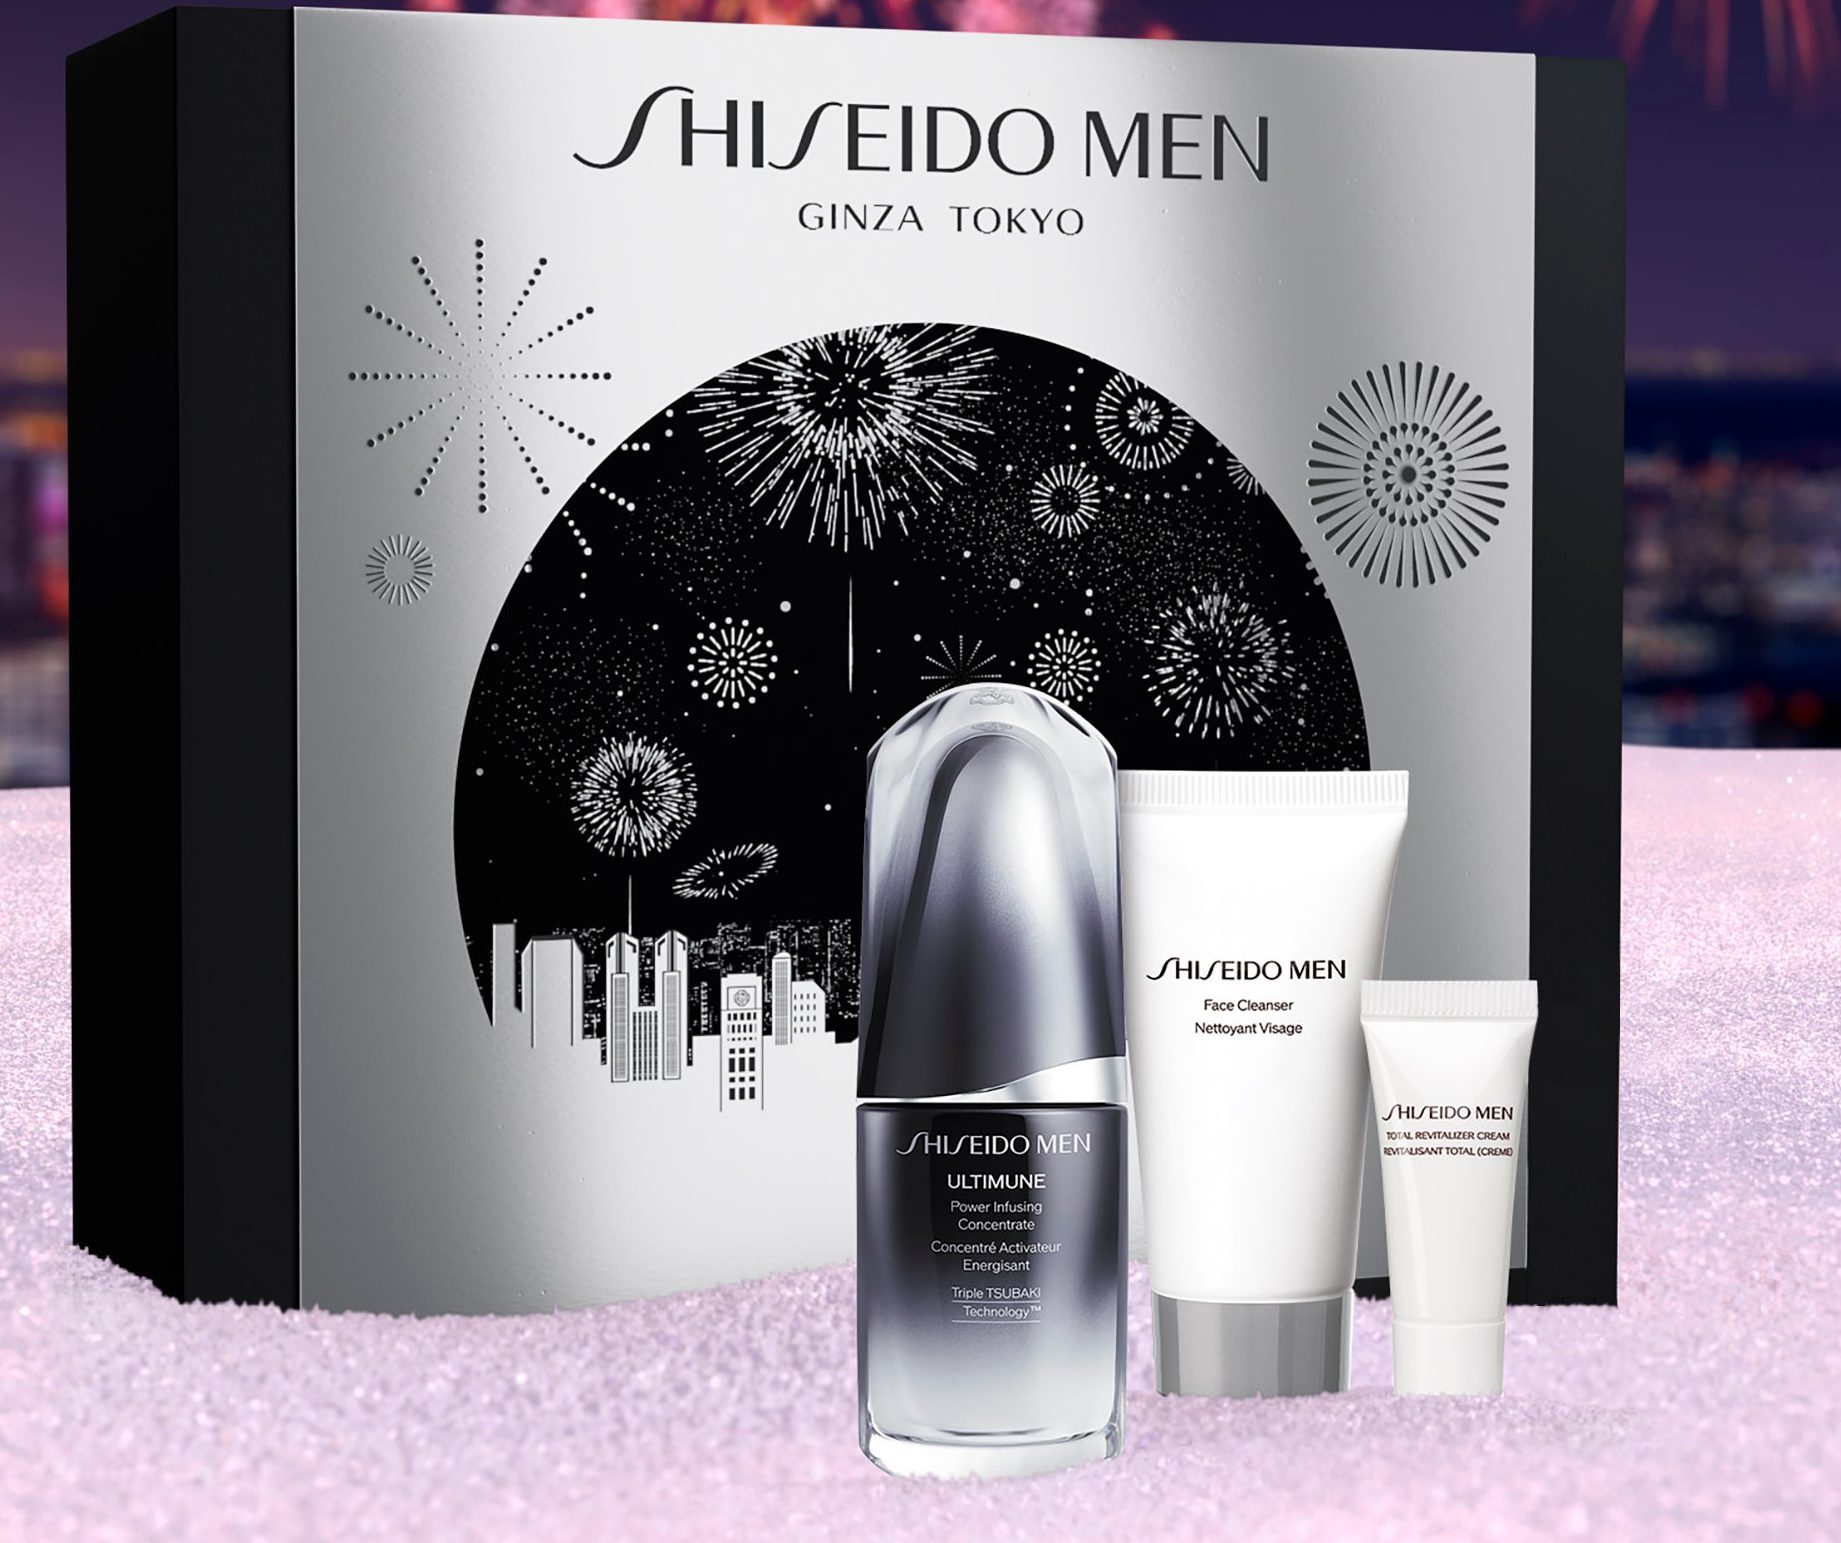 Cremas Shiseido Men